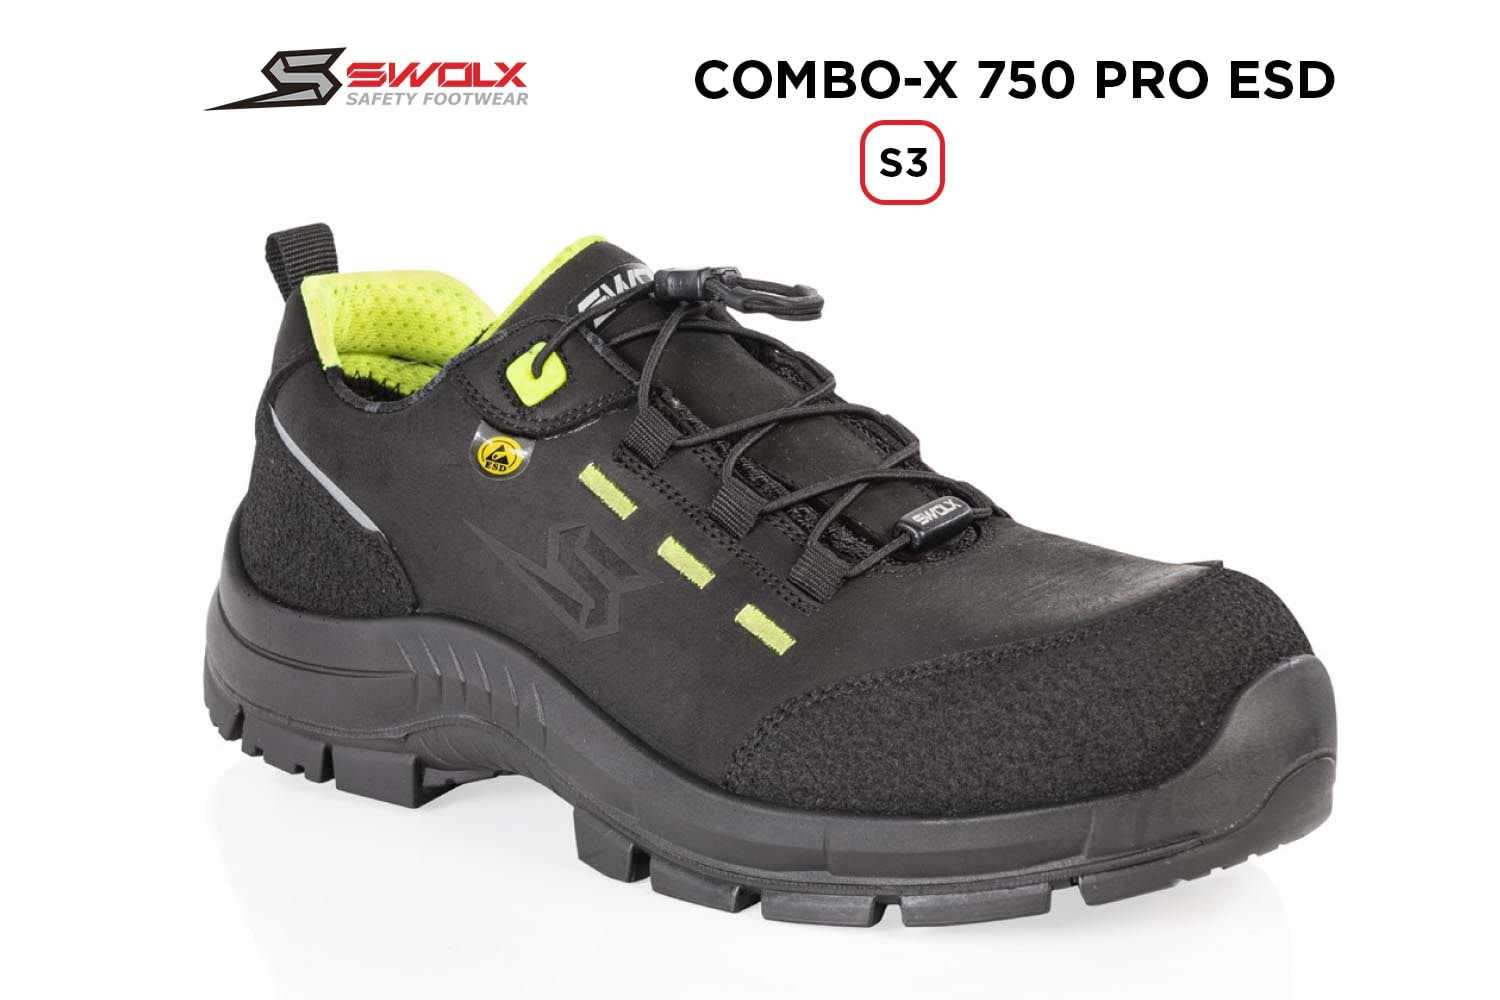 Swolx İş Ayakkabısı - Combo-X Pro Esd 750 S3 - 37